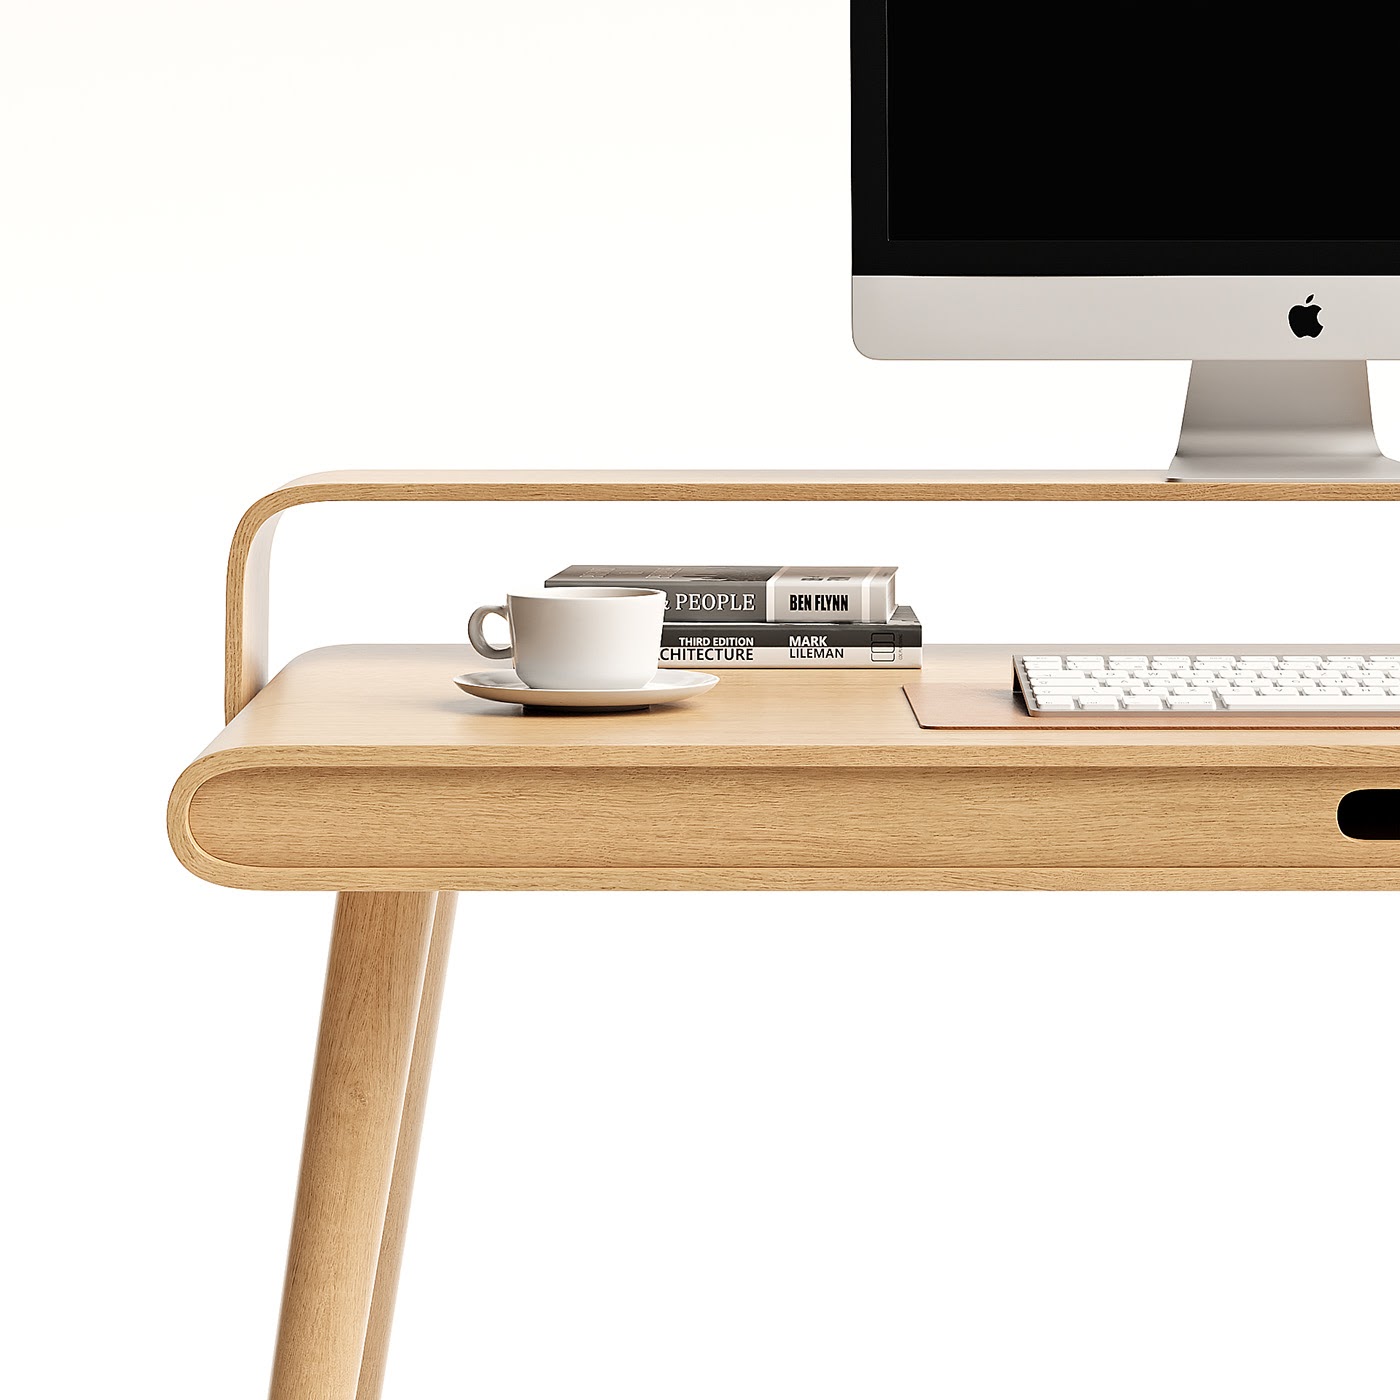 极简精巧的工业设计：Loop工作台桌设计